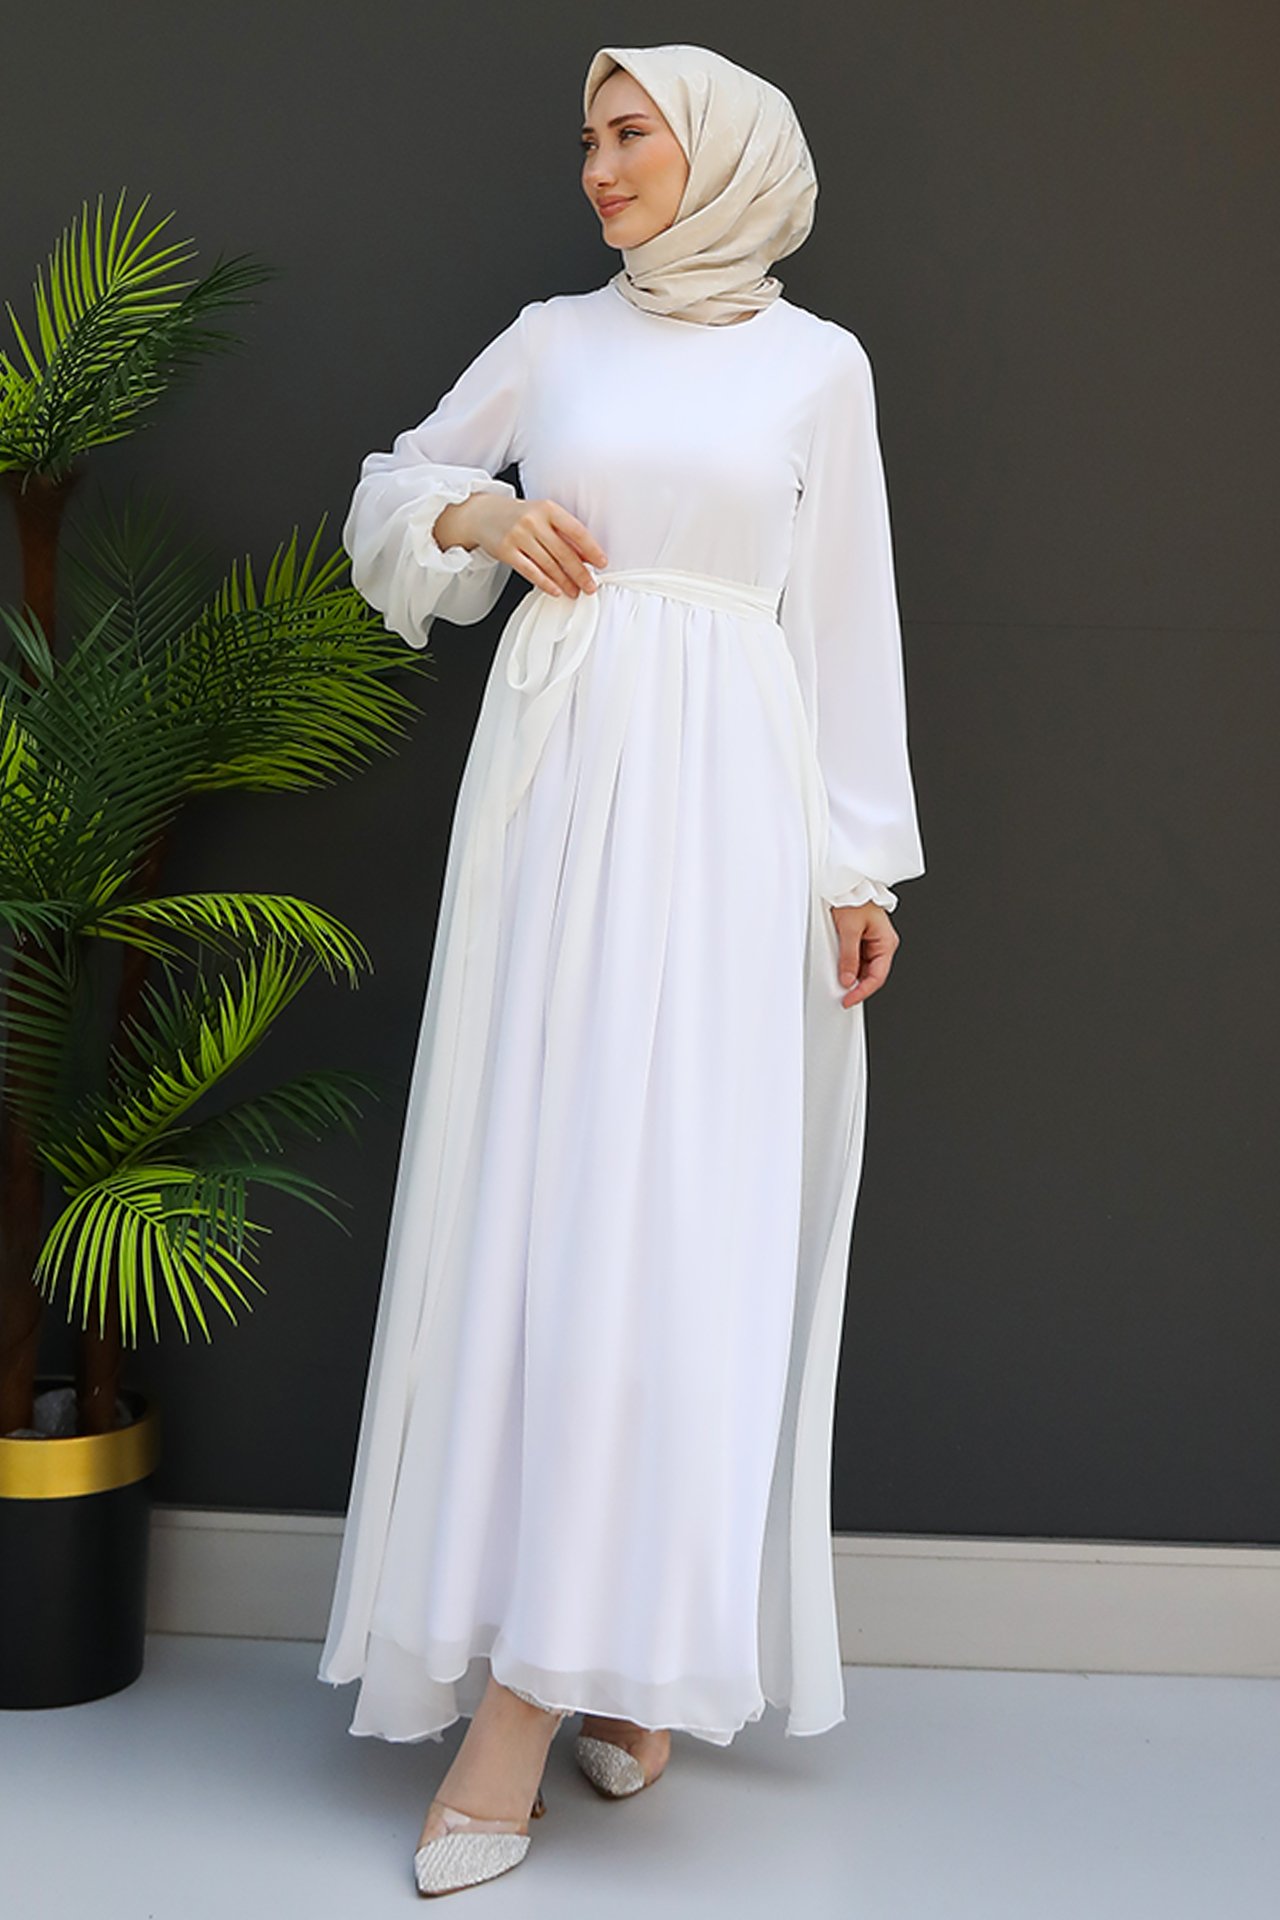 GİZ AGİYİM - Nare Tesettür Şifon Elbise Beyaz